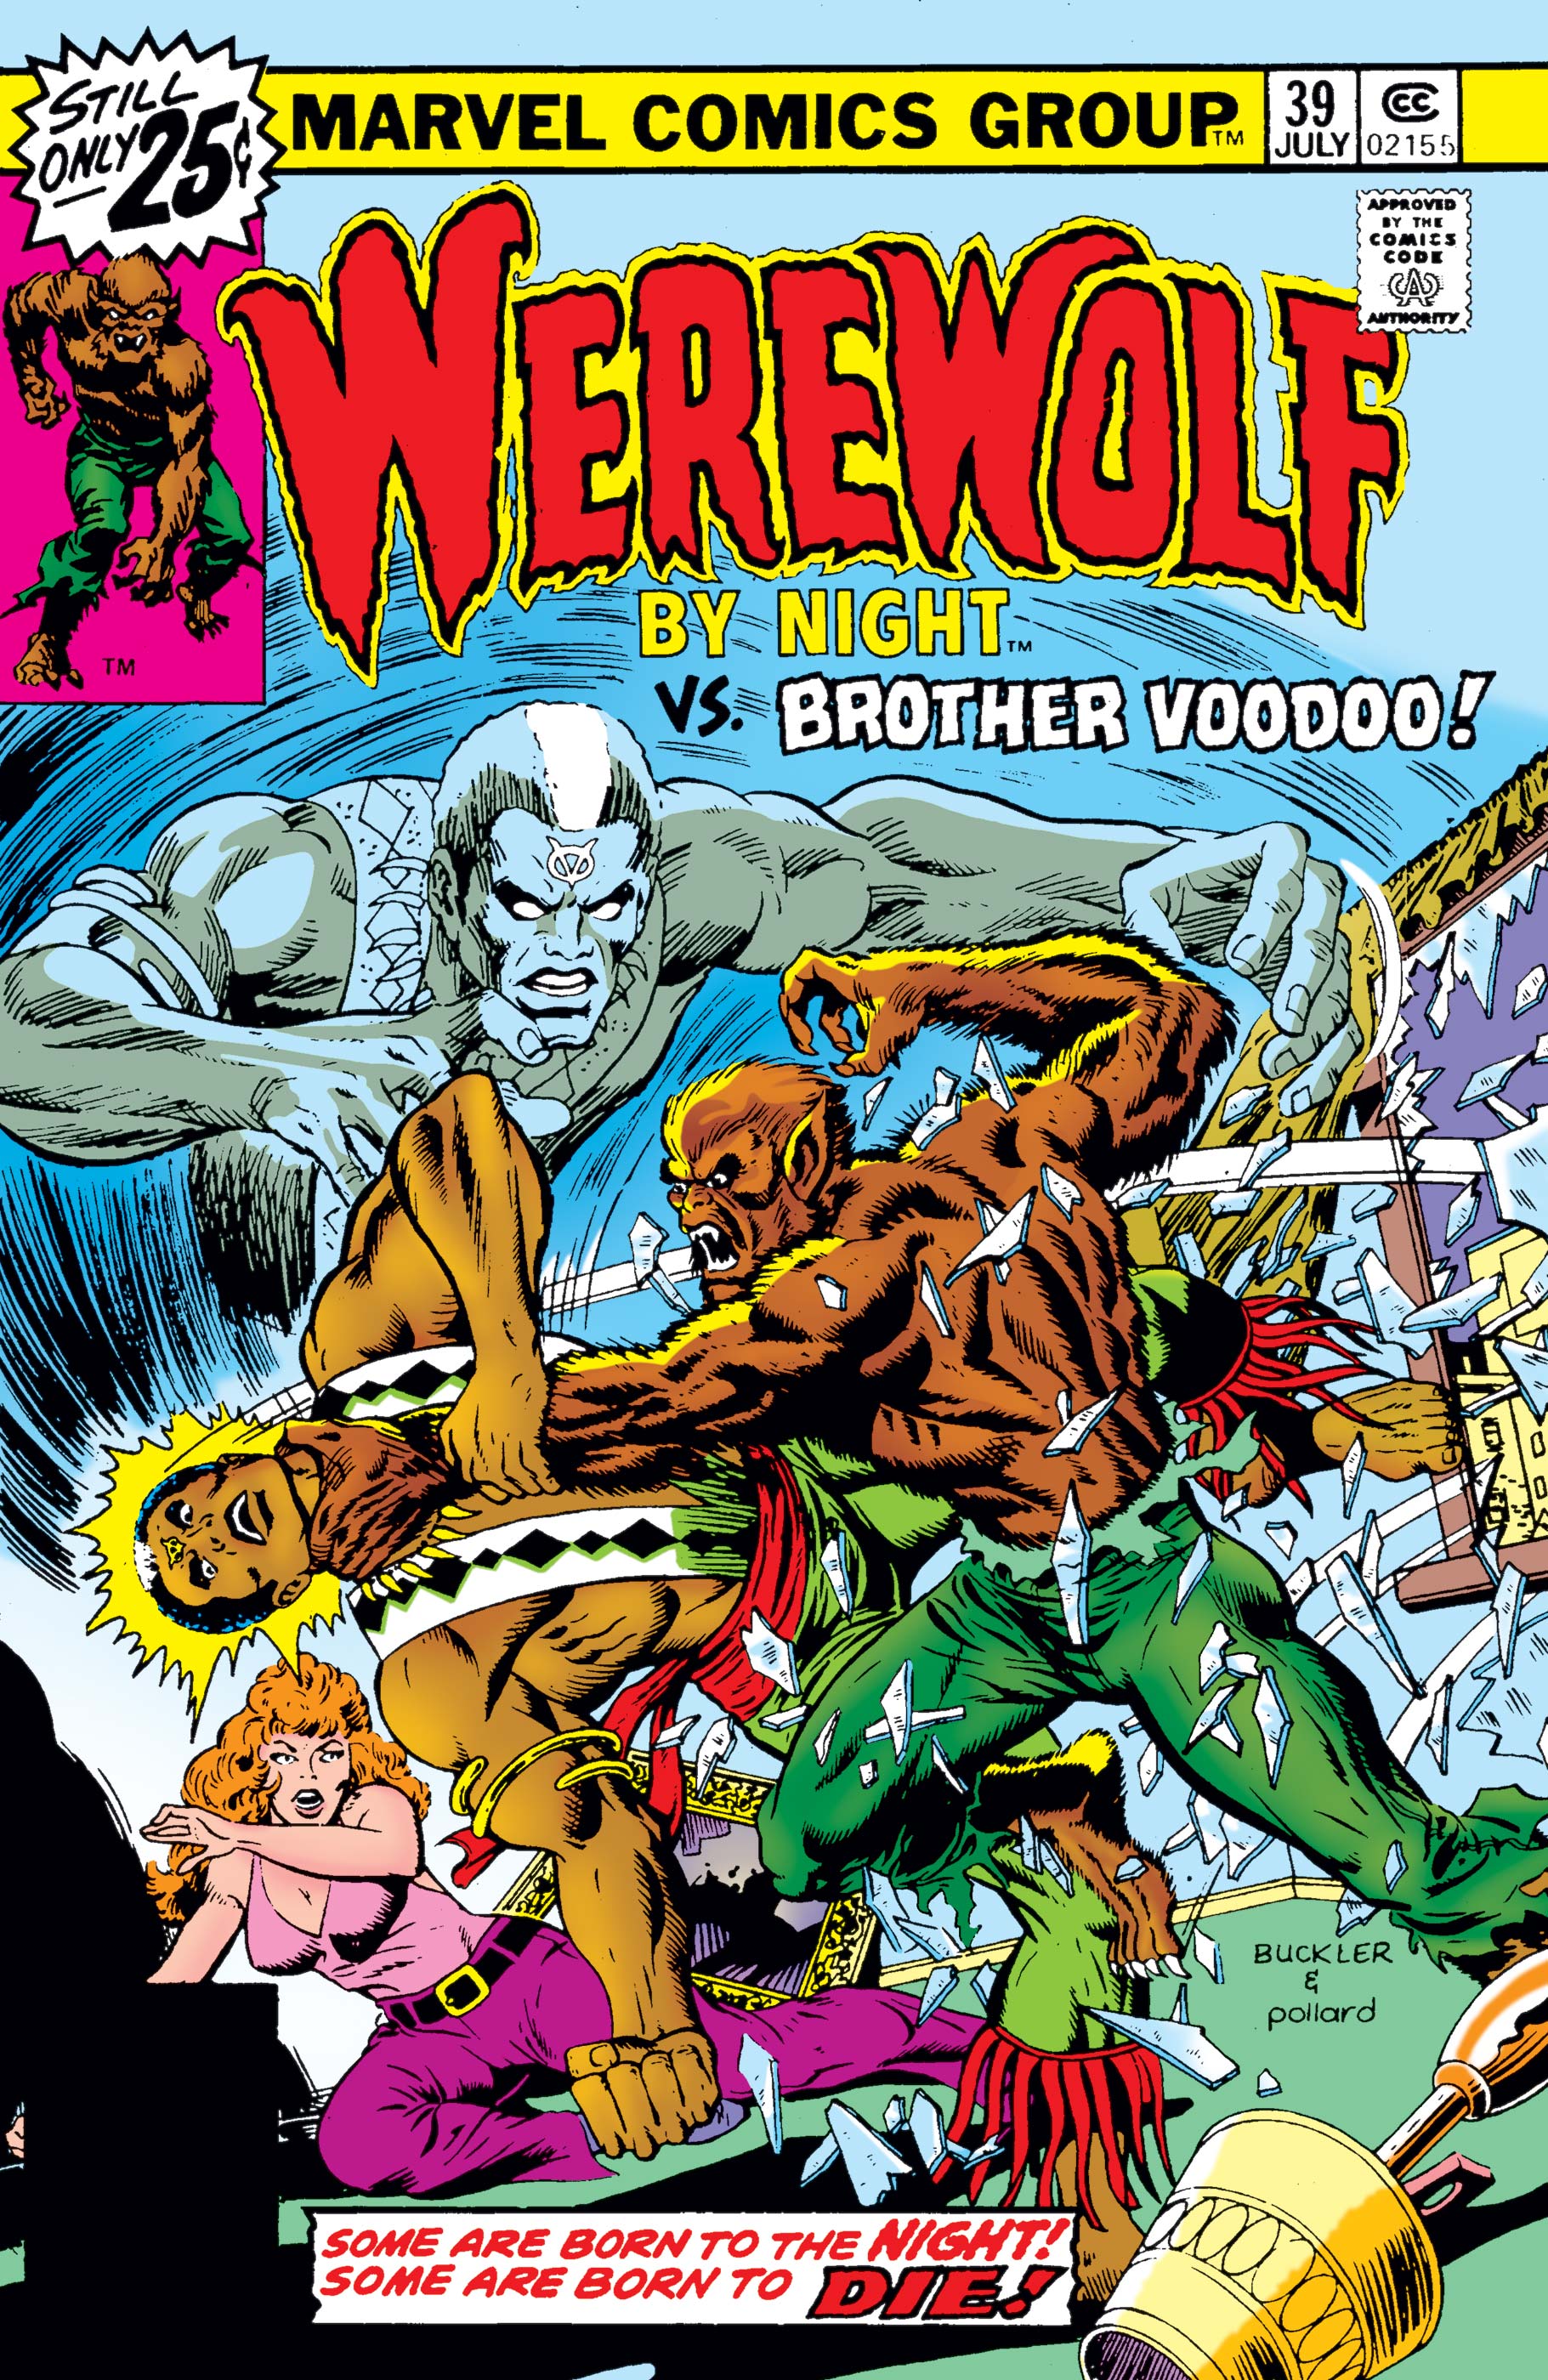 Werewolf By Night (1972) #39